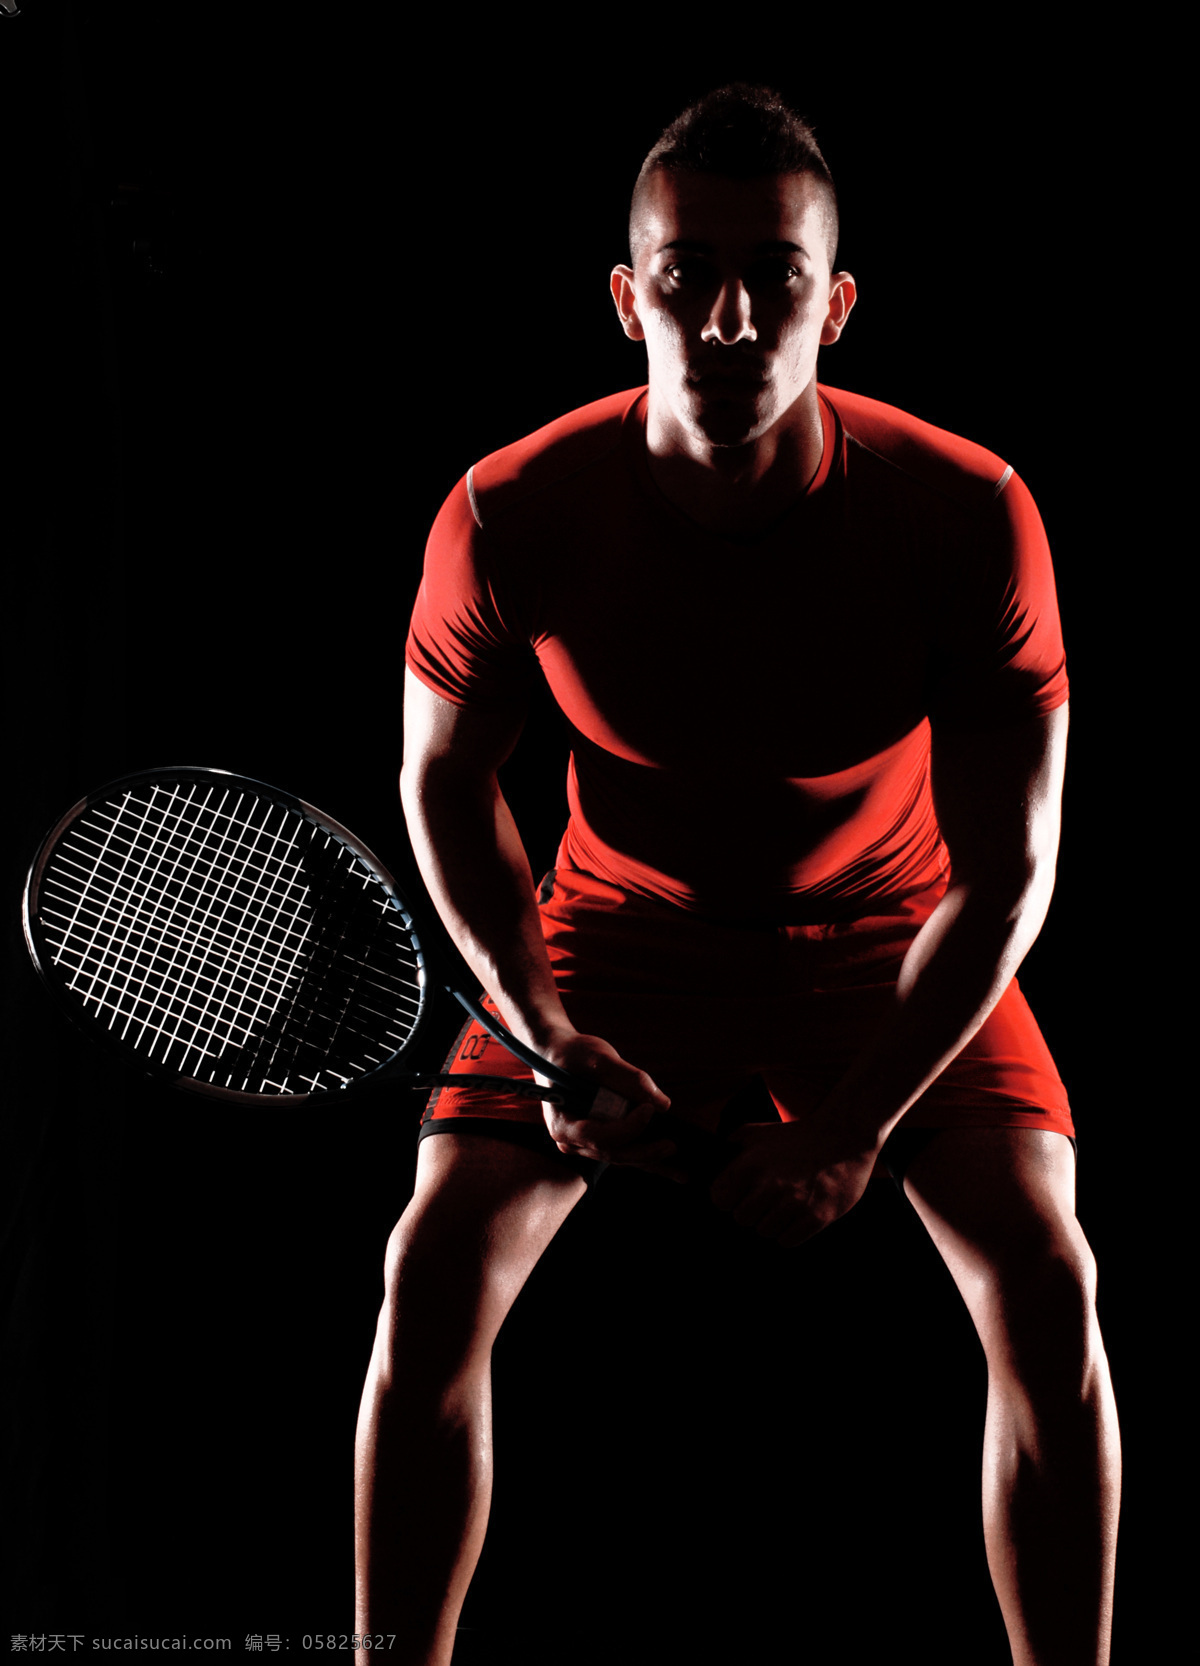 打球 非洲 男人 网球广告 网球素材 体育 运动 健身 男性 人物图库 体育运动 生活百科